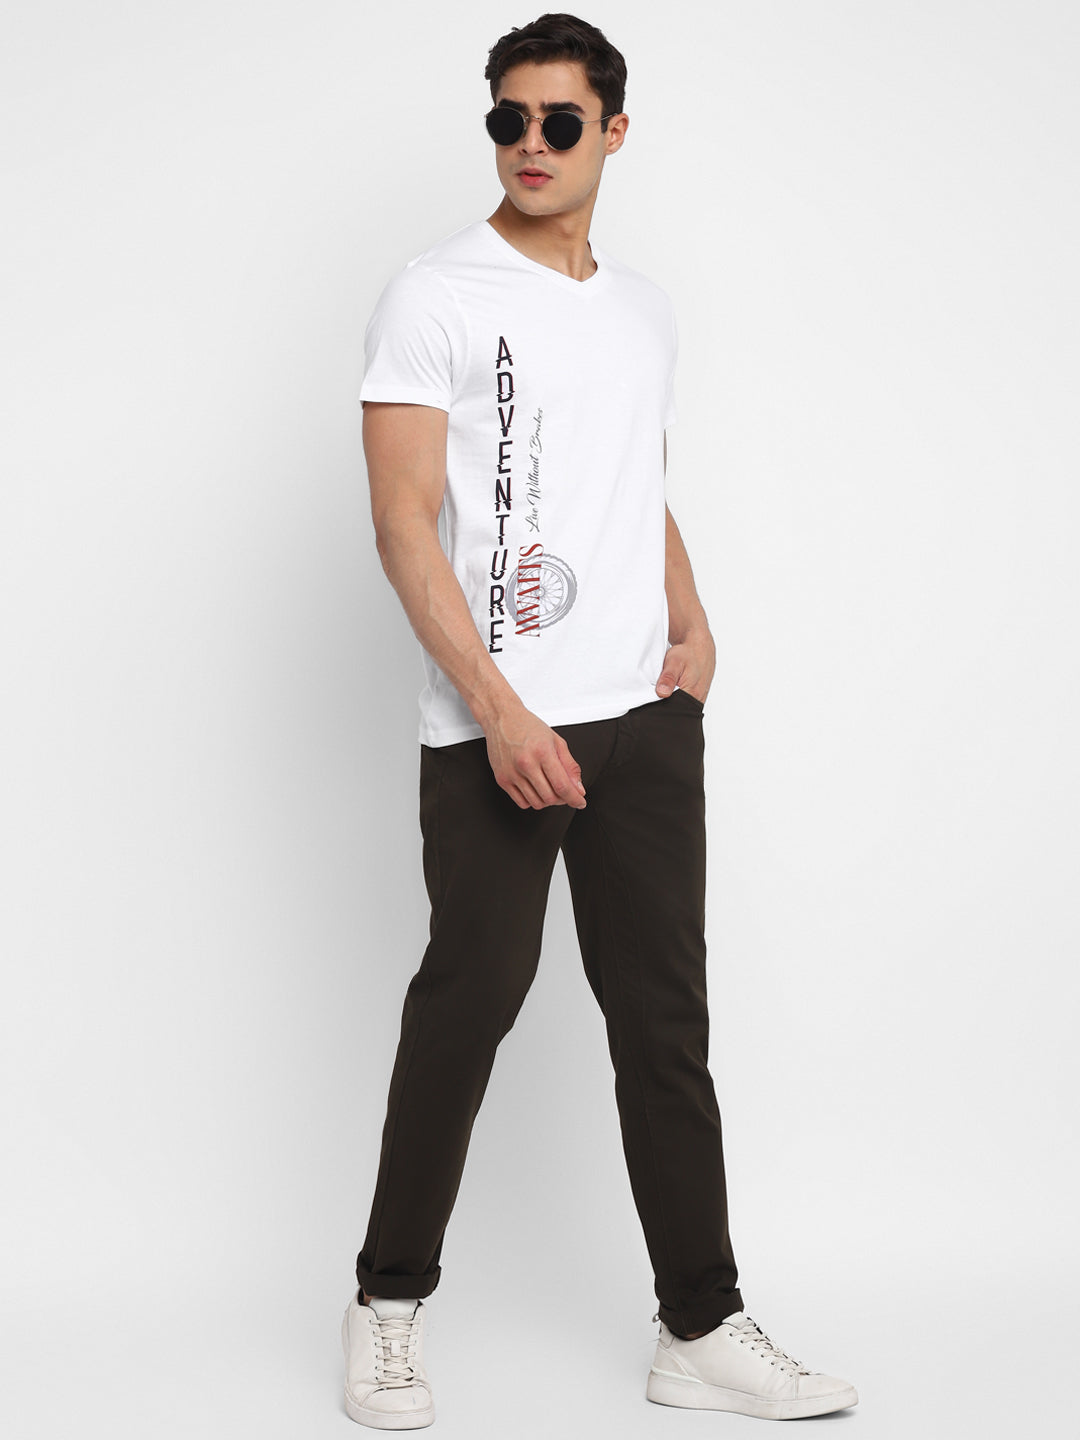 100% Cotton Printed V Neck T-Shirt For Men - White